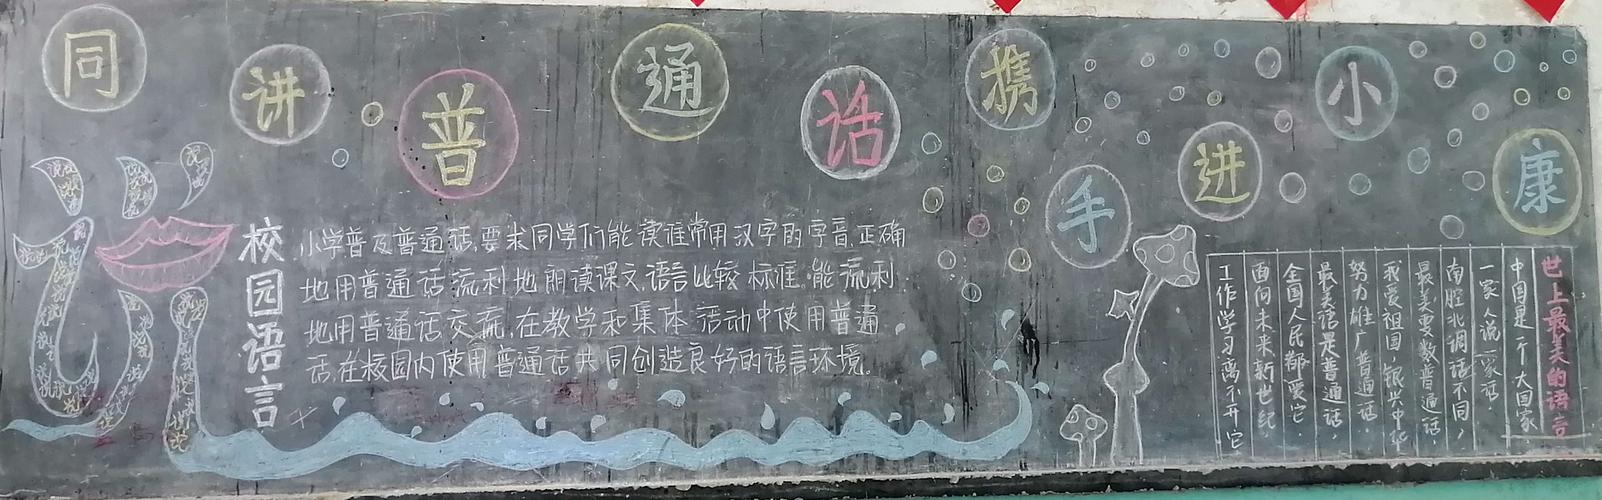 蛟潭中学同讲普通话 携手进小康黑板报评比